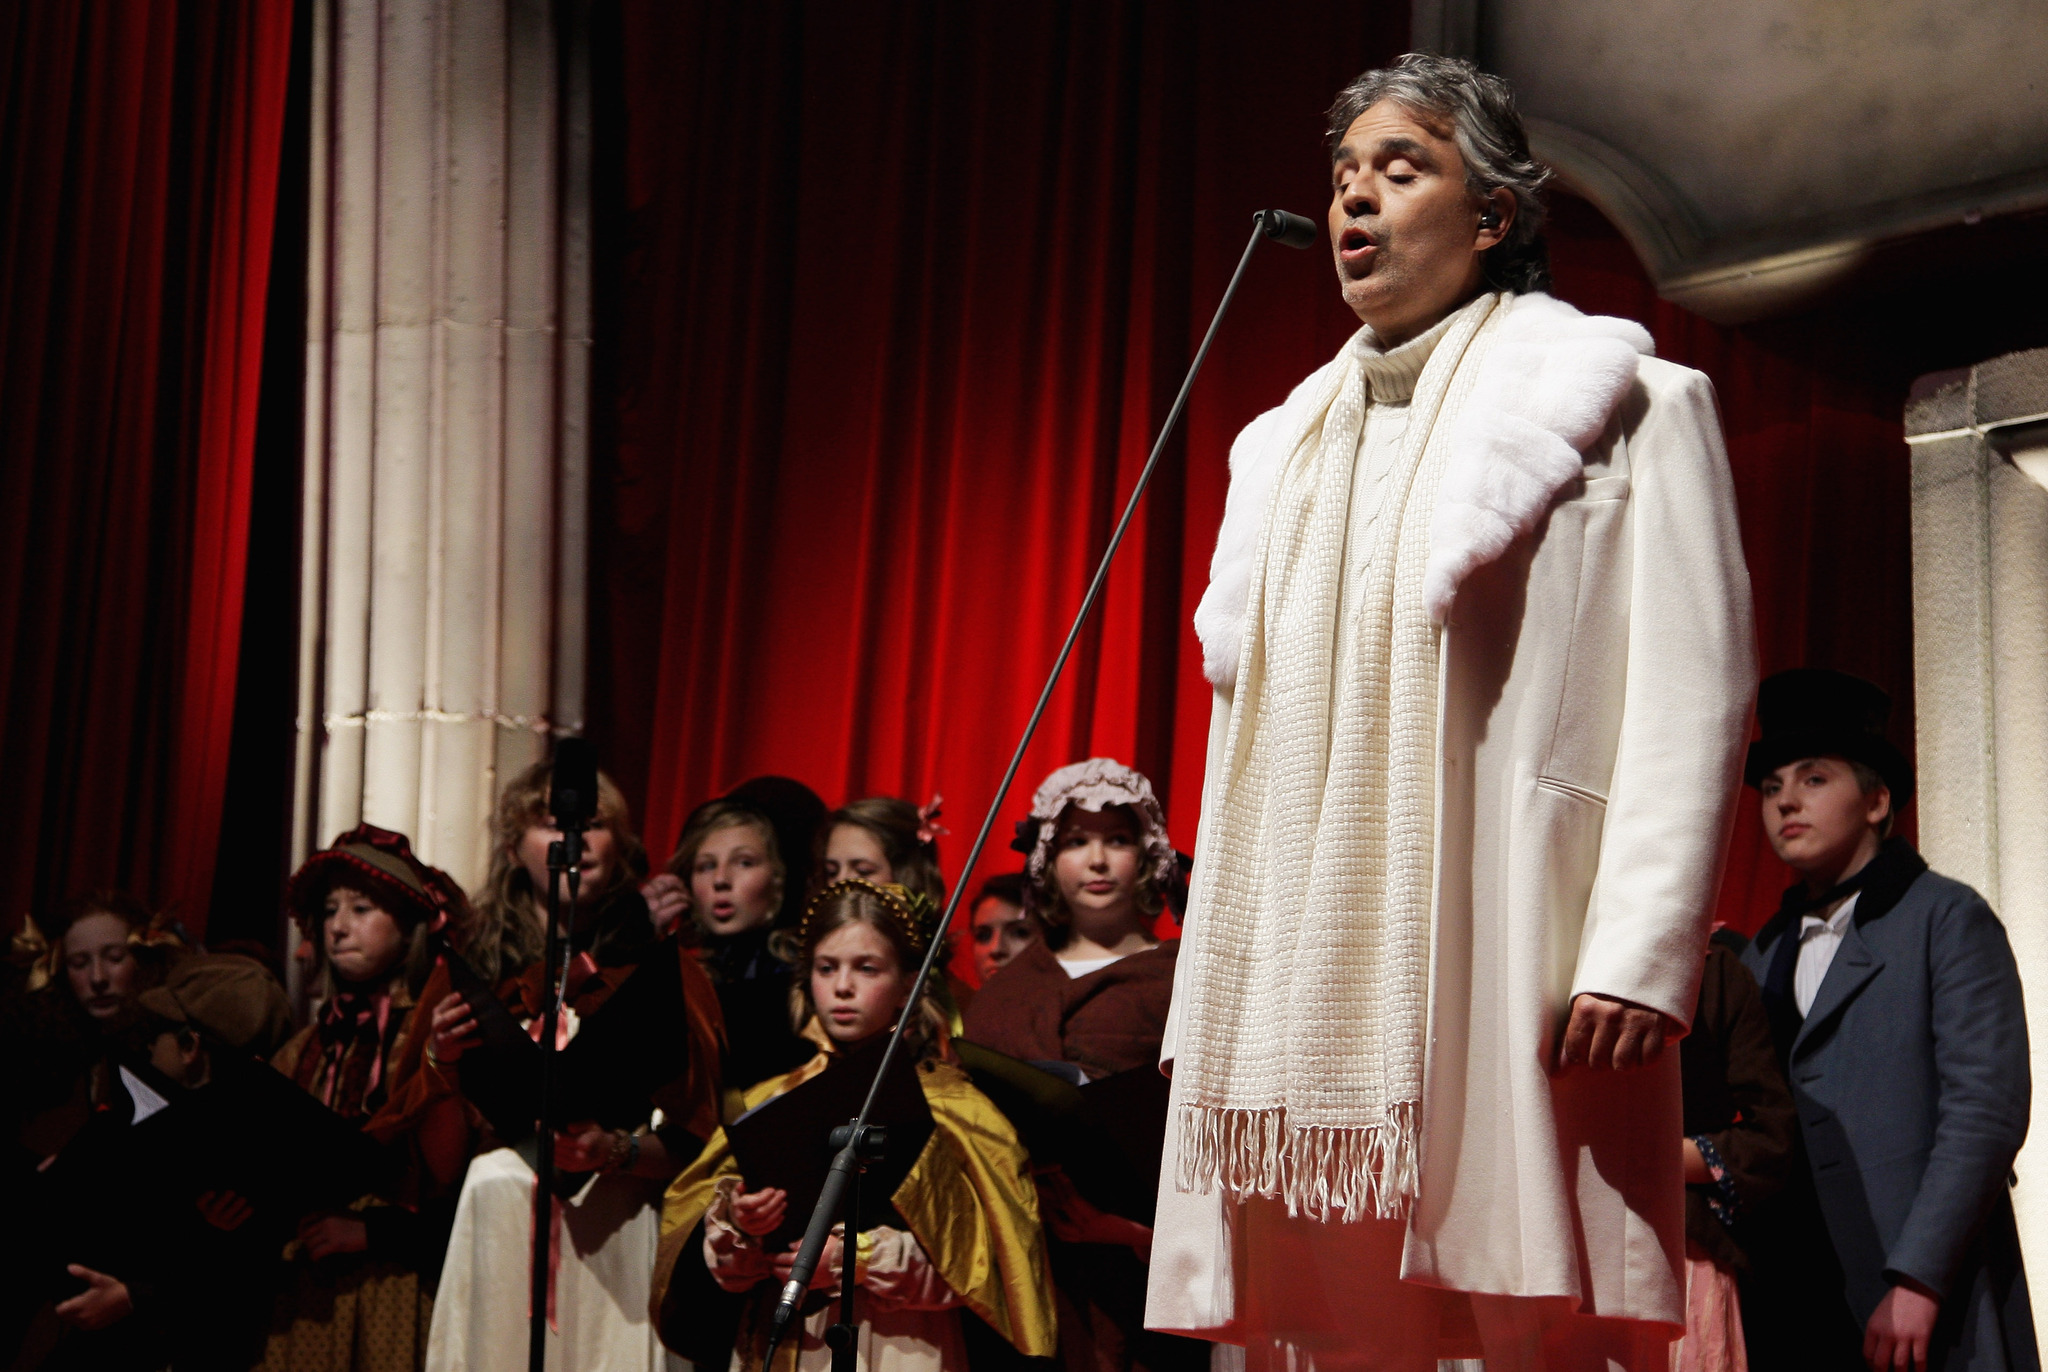 Andrea Bocelli at event of Kaledu giesme (2009)